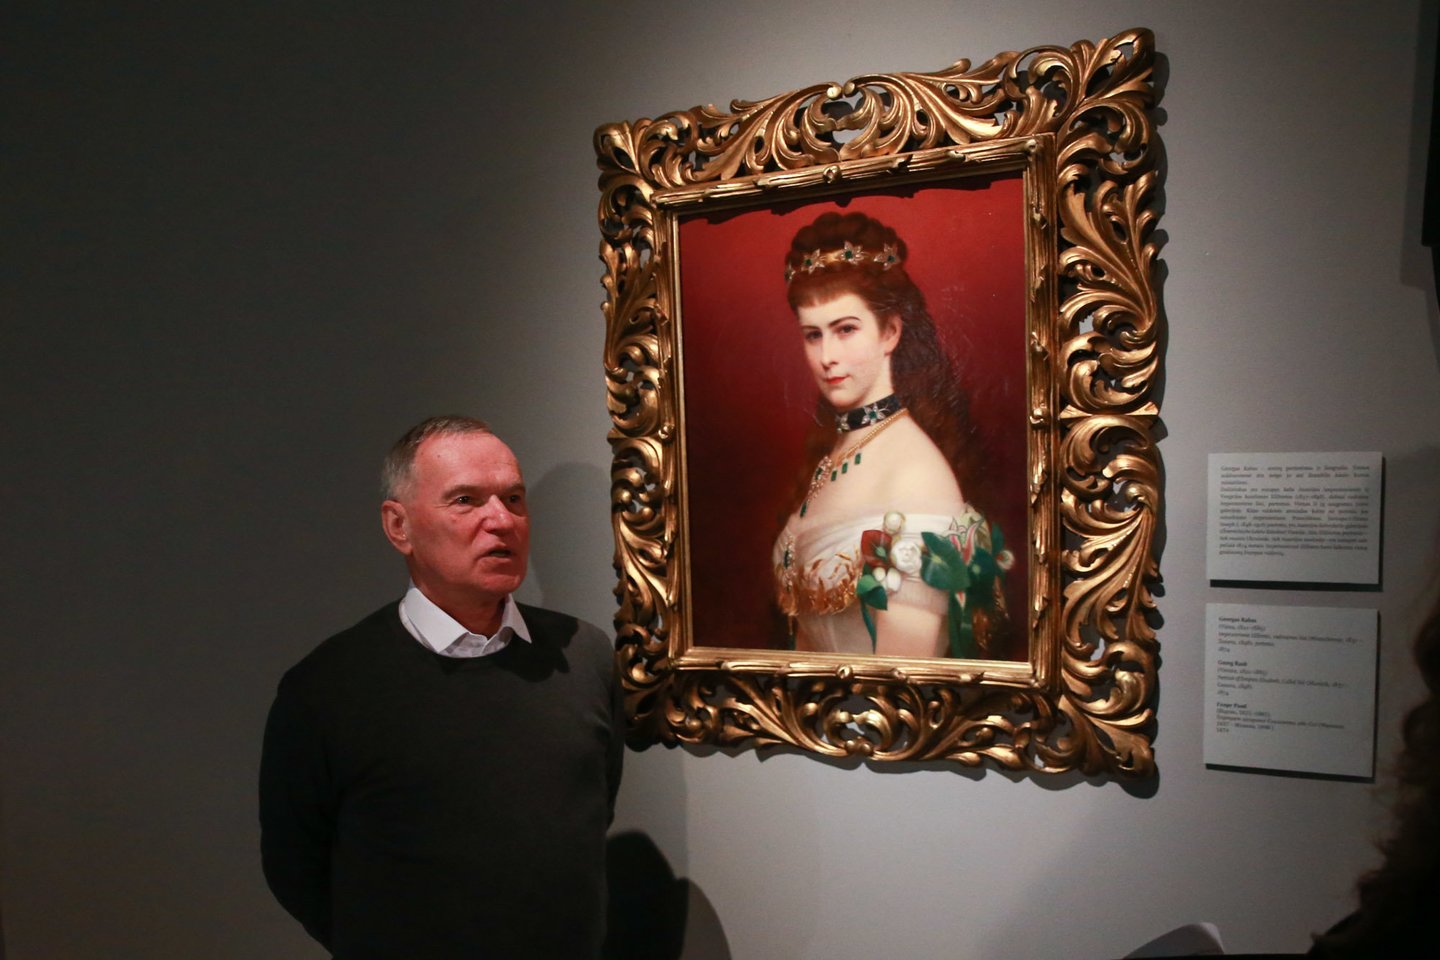 Lvivo muziejininkui T.Vozniakui ypač svarbus Austrijos imperatorienės „Sisi“ portretas. Ji buvo laikoma viena gražiausių Europos valdovių.<br>R.Danisevičiaus nuotr.